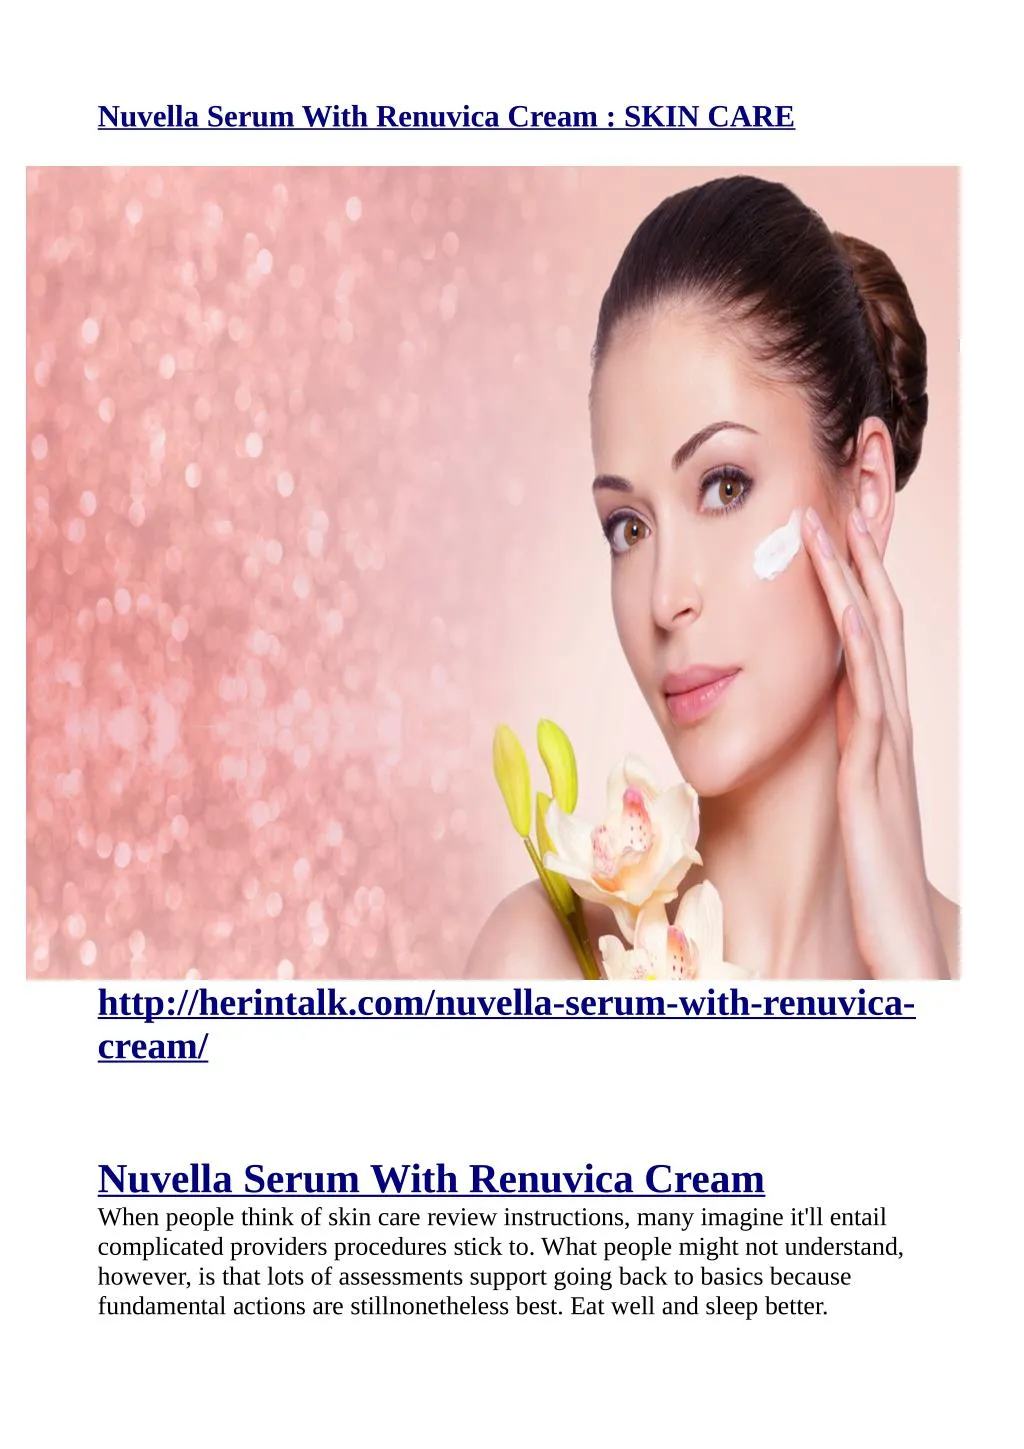 nuvella serum with renuvica cream skin care